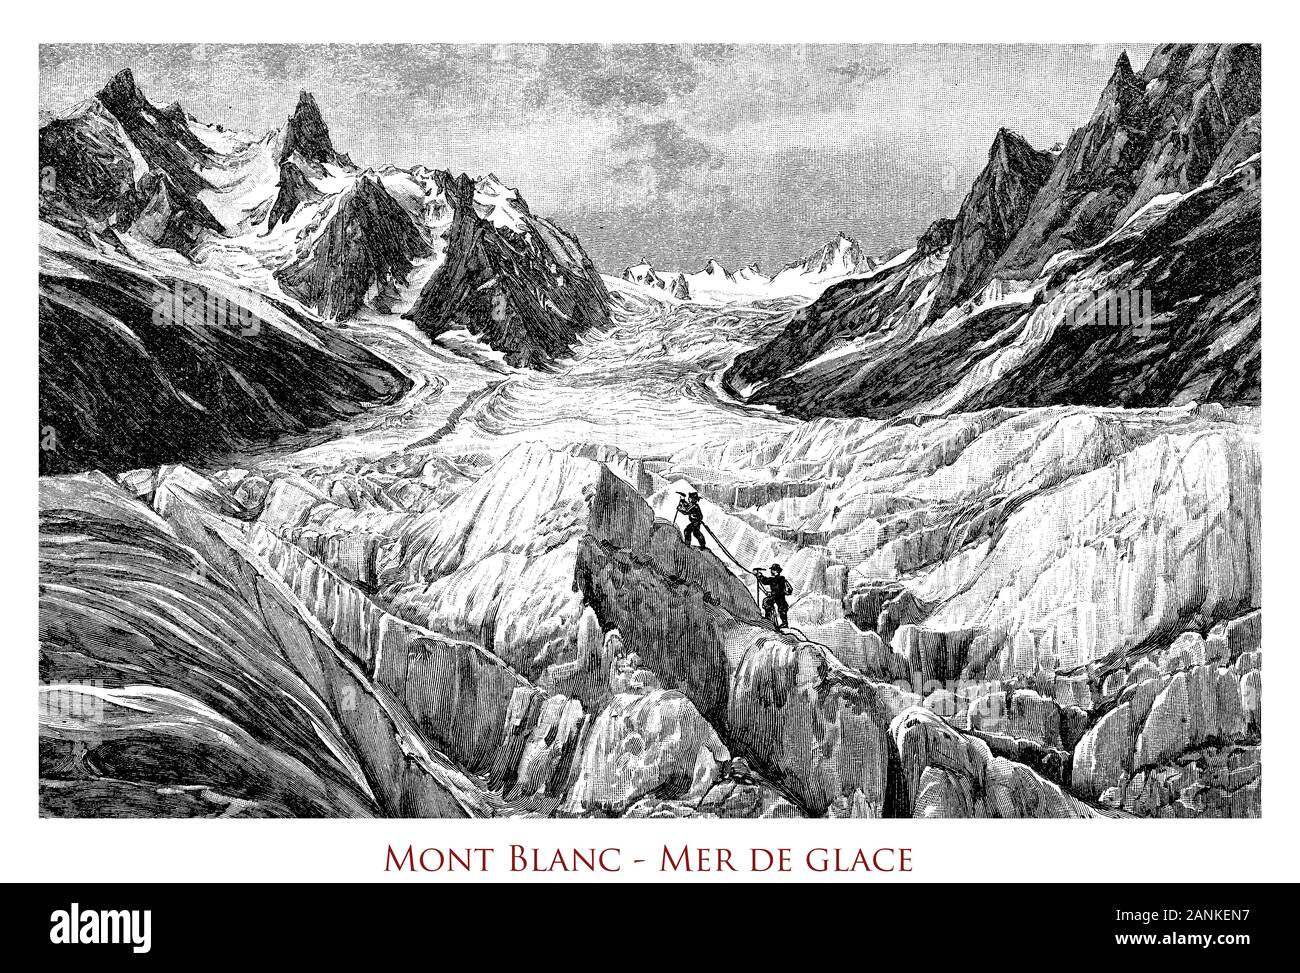 Mont Blanc - Mer de glace, un glacier de vallée sur le versant nord du Mont Blanc, dans les Alpes françaises 7,5 km de long Banque D'Images